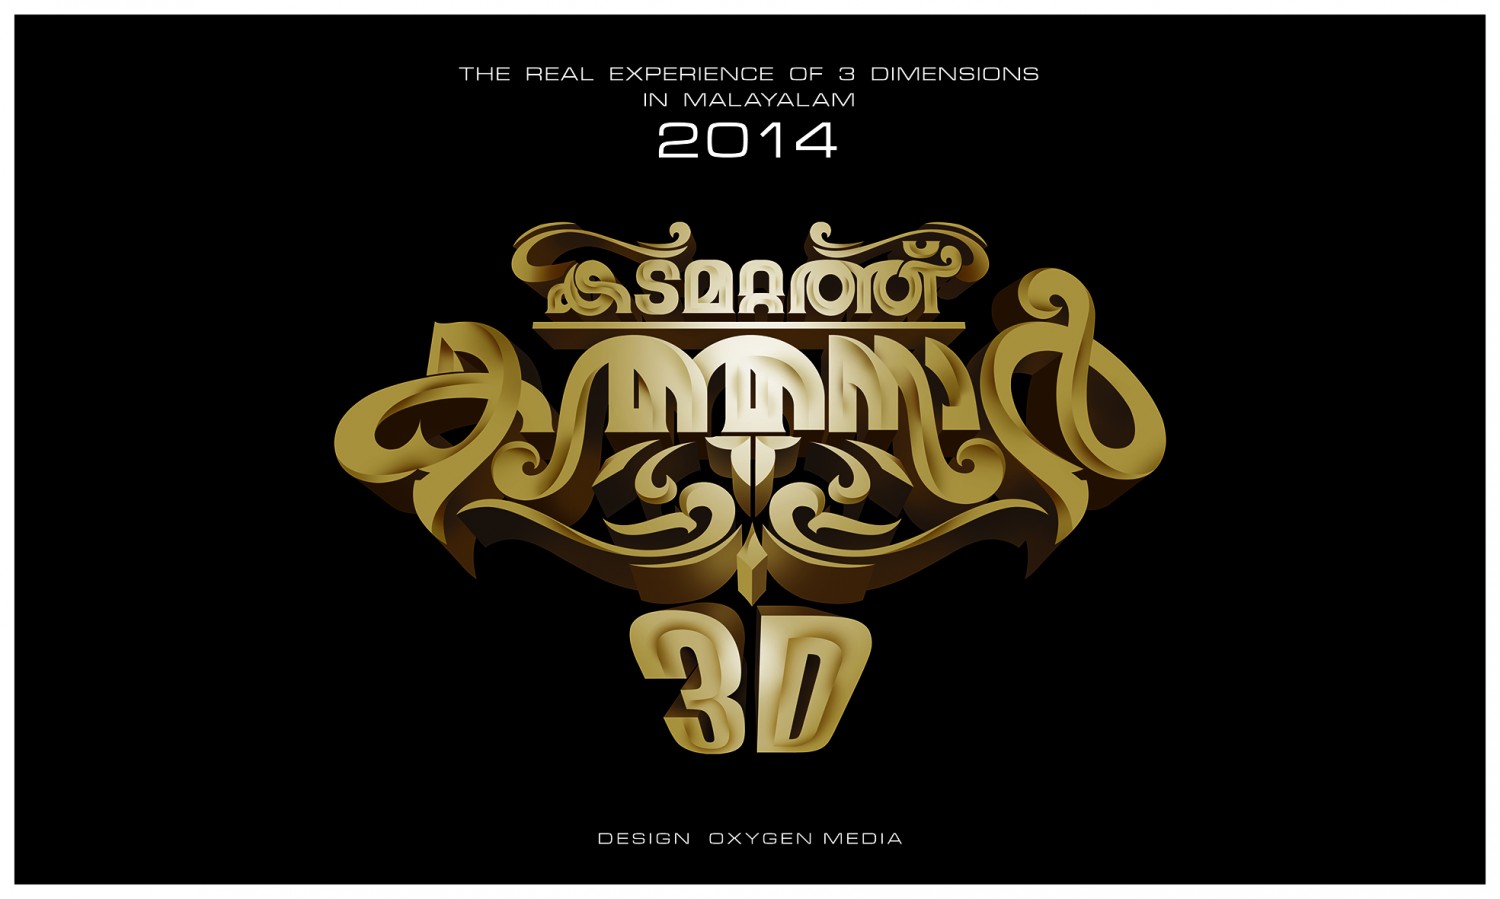 Extra Large Movie Poster Image for Kadamattathu Kathanar 